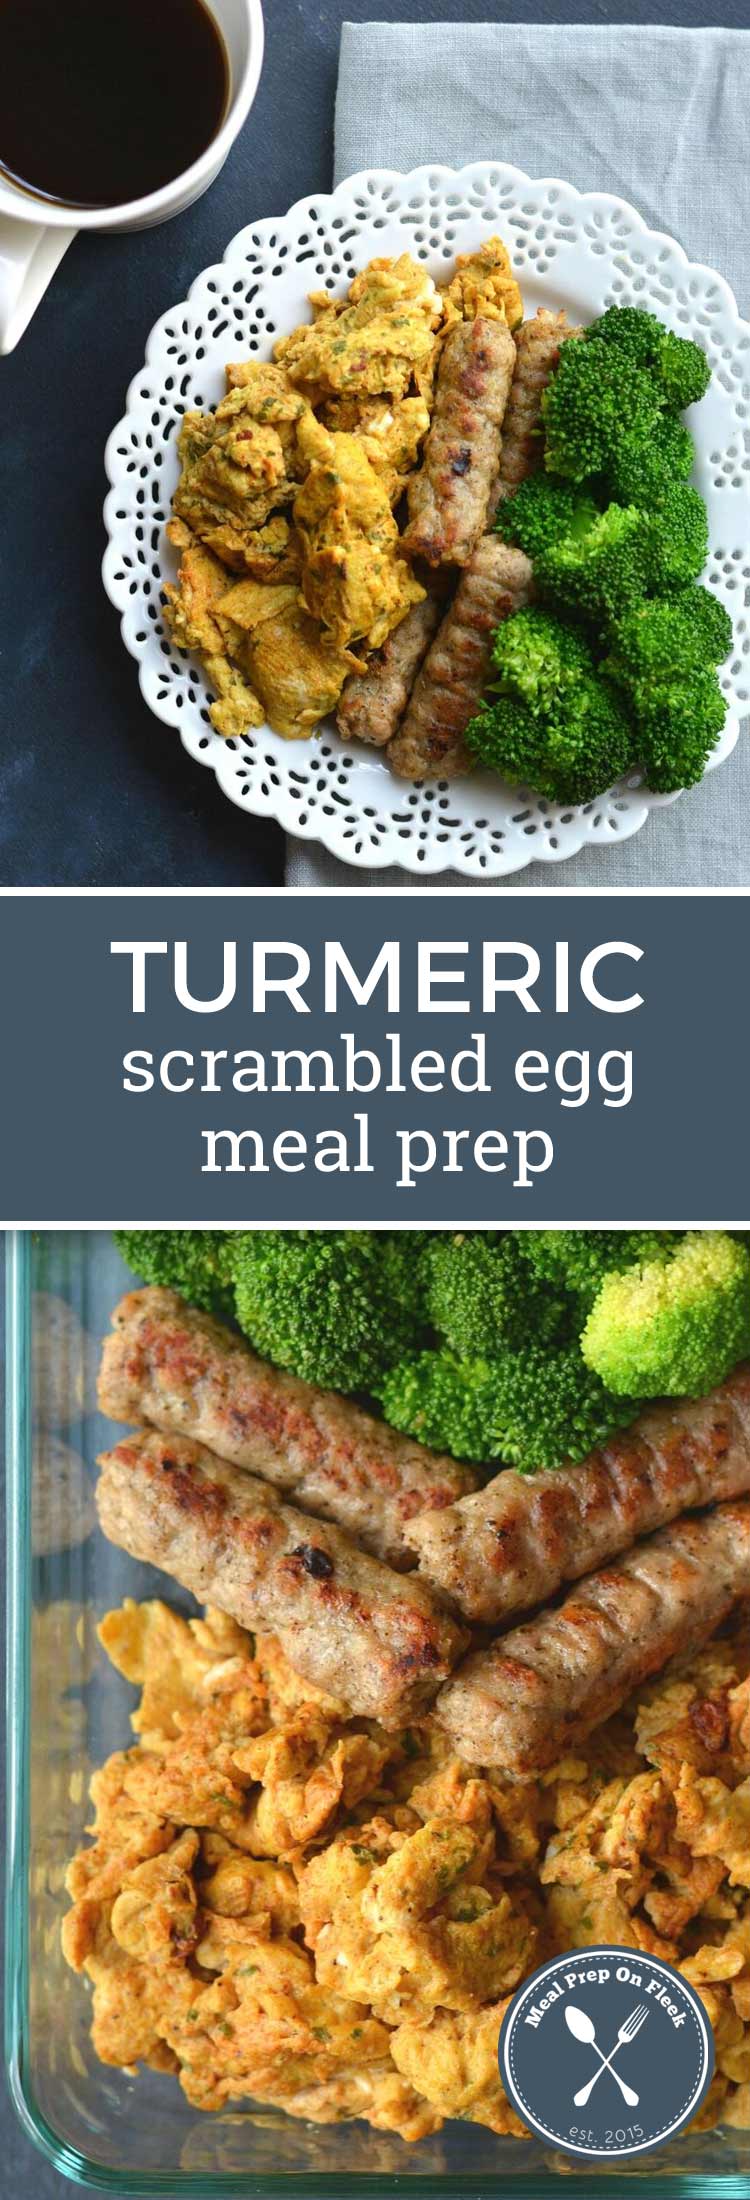 turmeric eggs, broccoli, and sausage